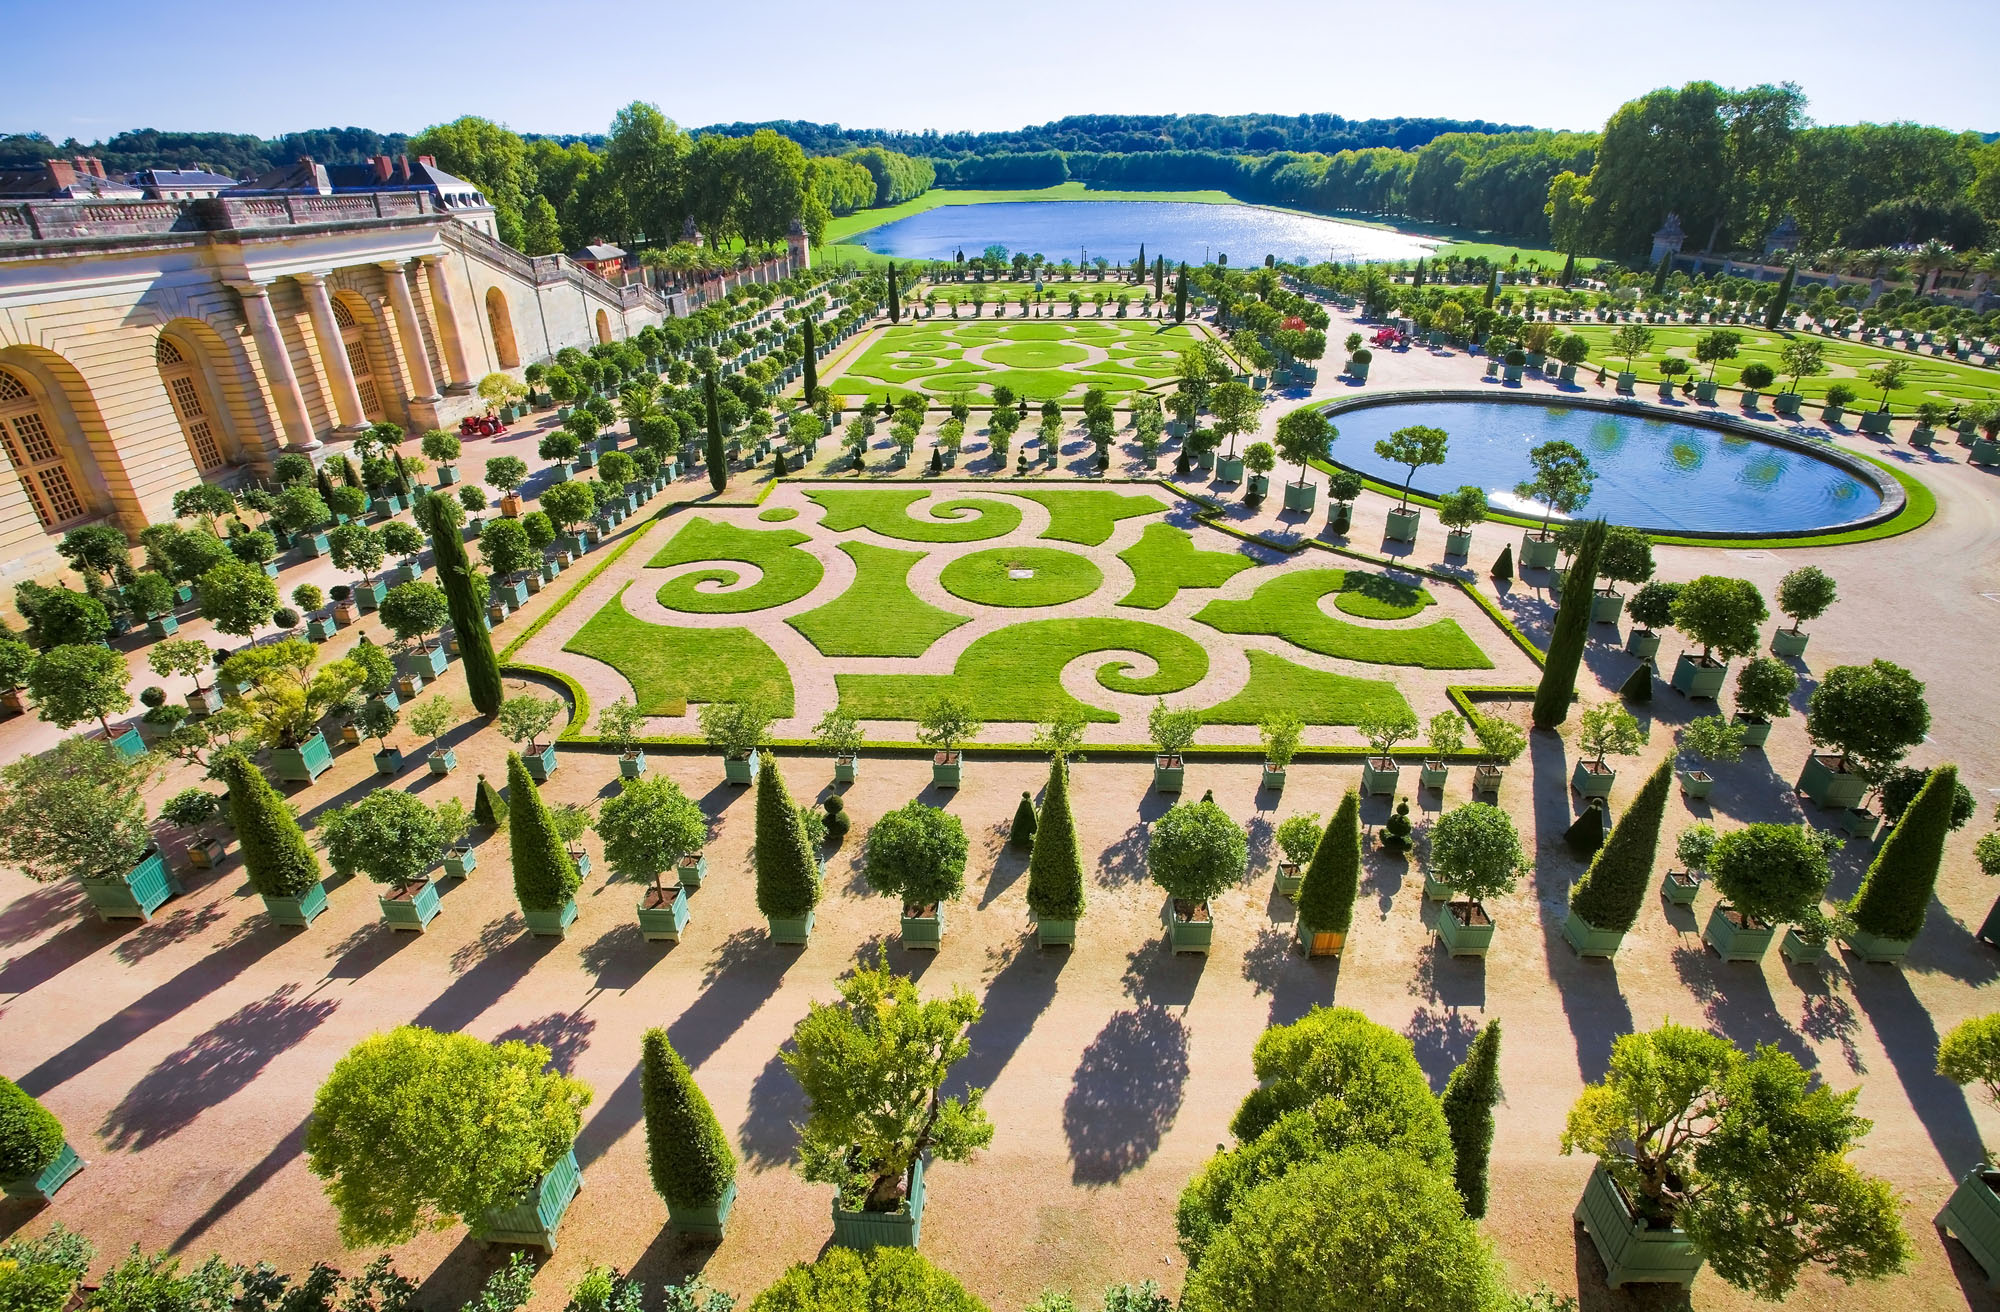 Les plus beaux jardins de France